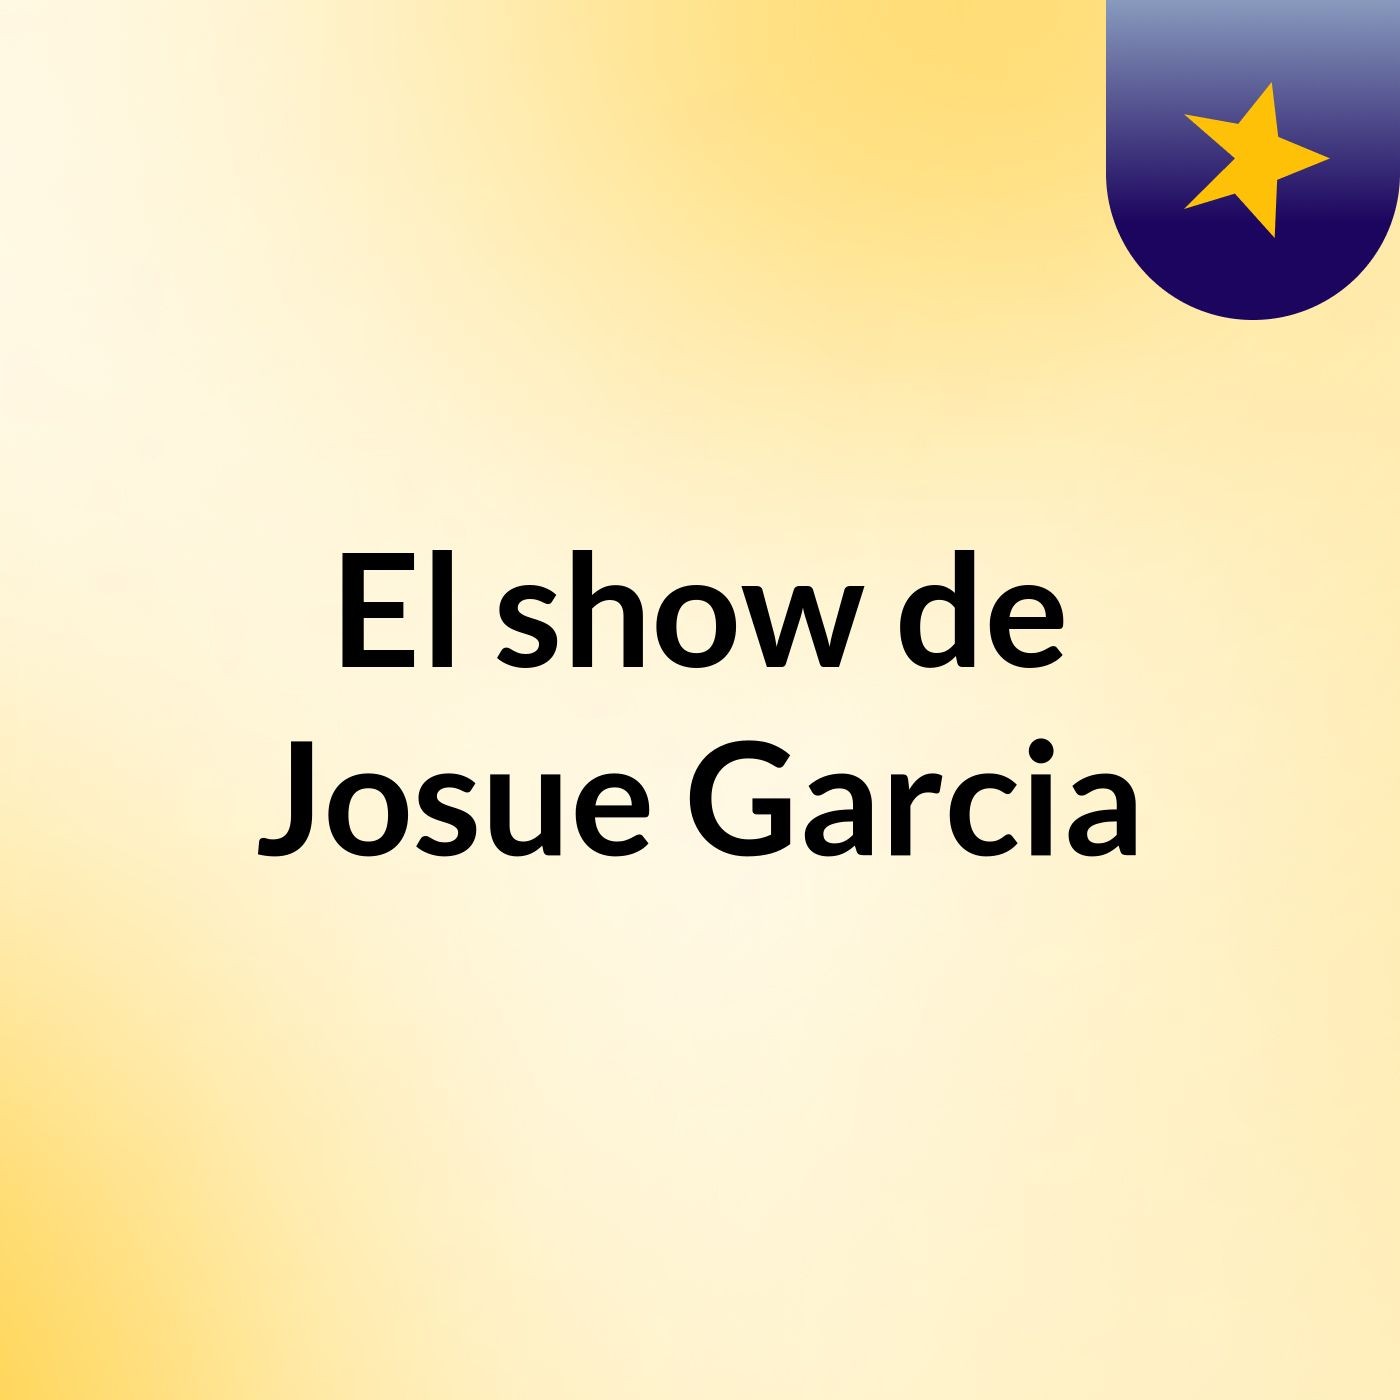 El show de Josue Garcia